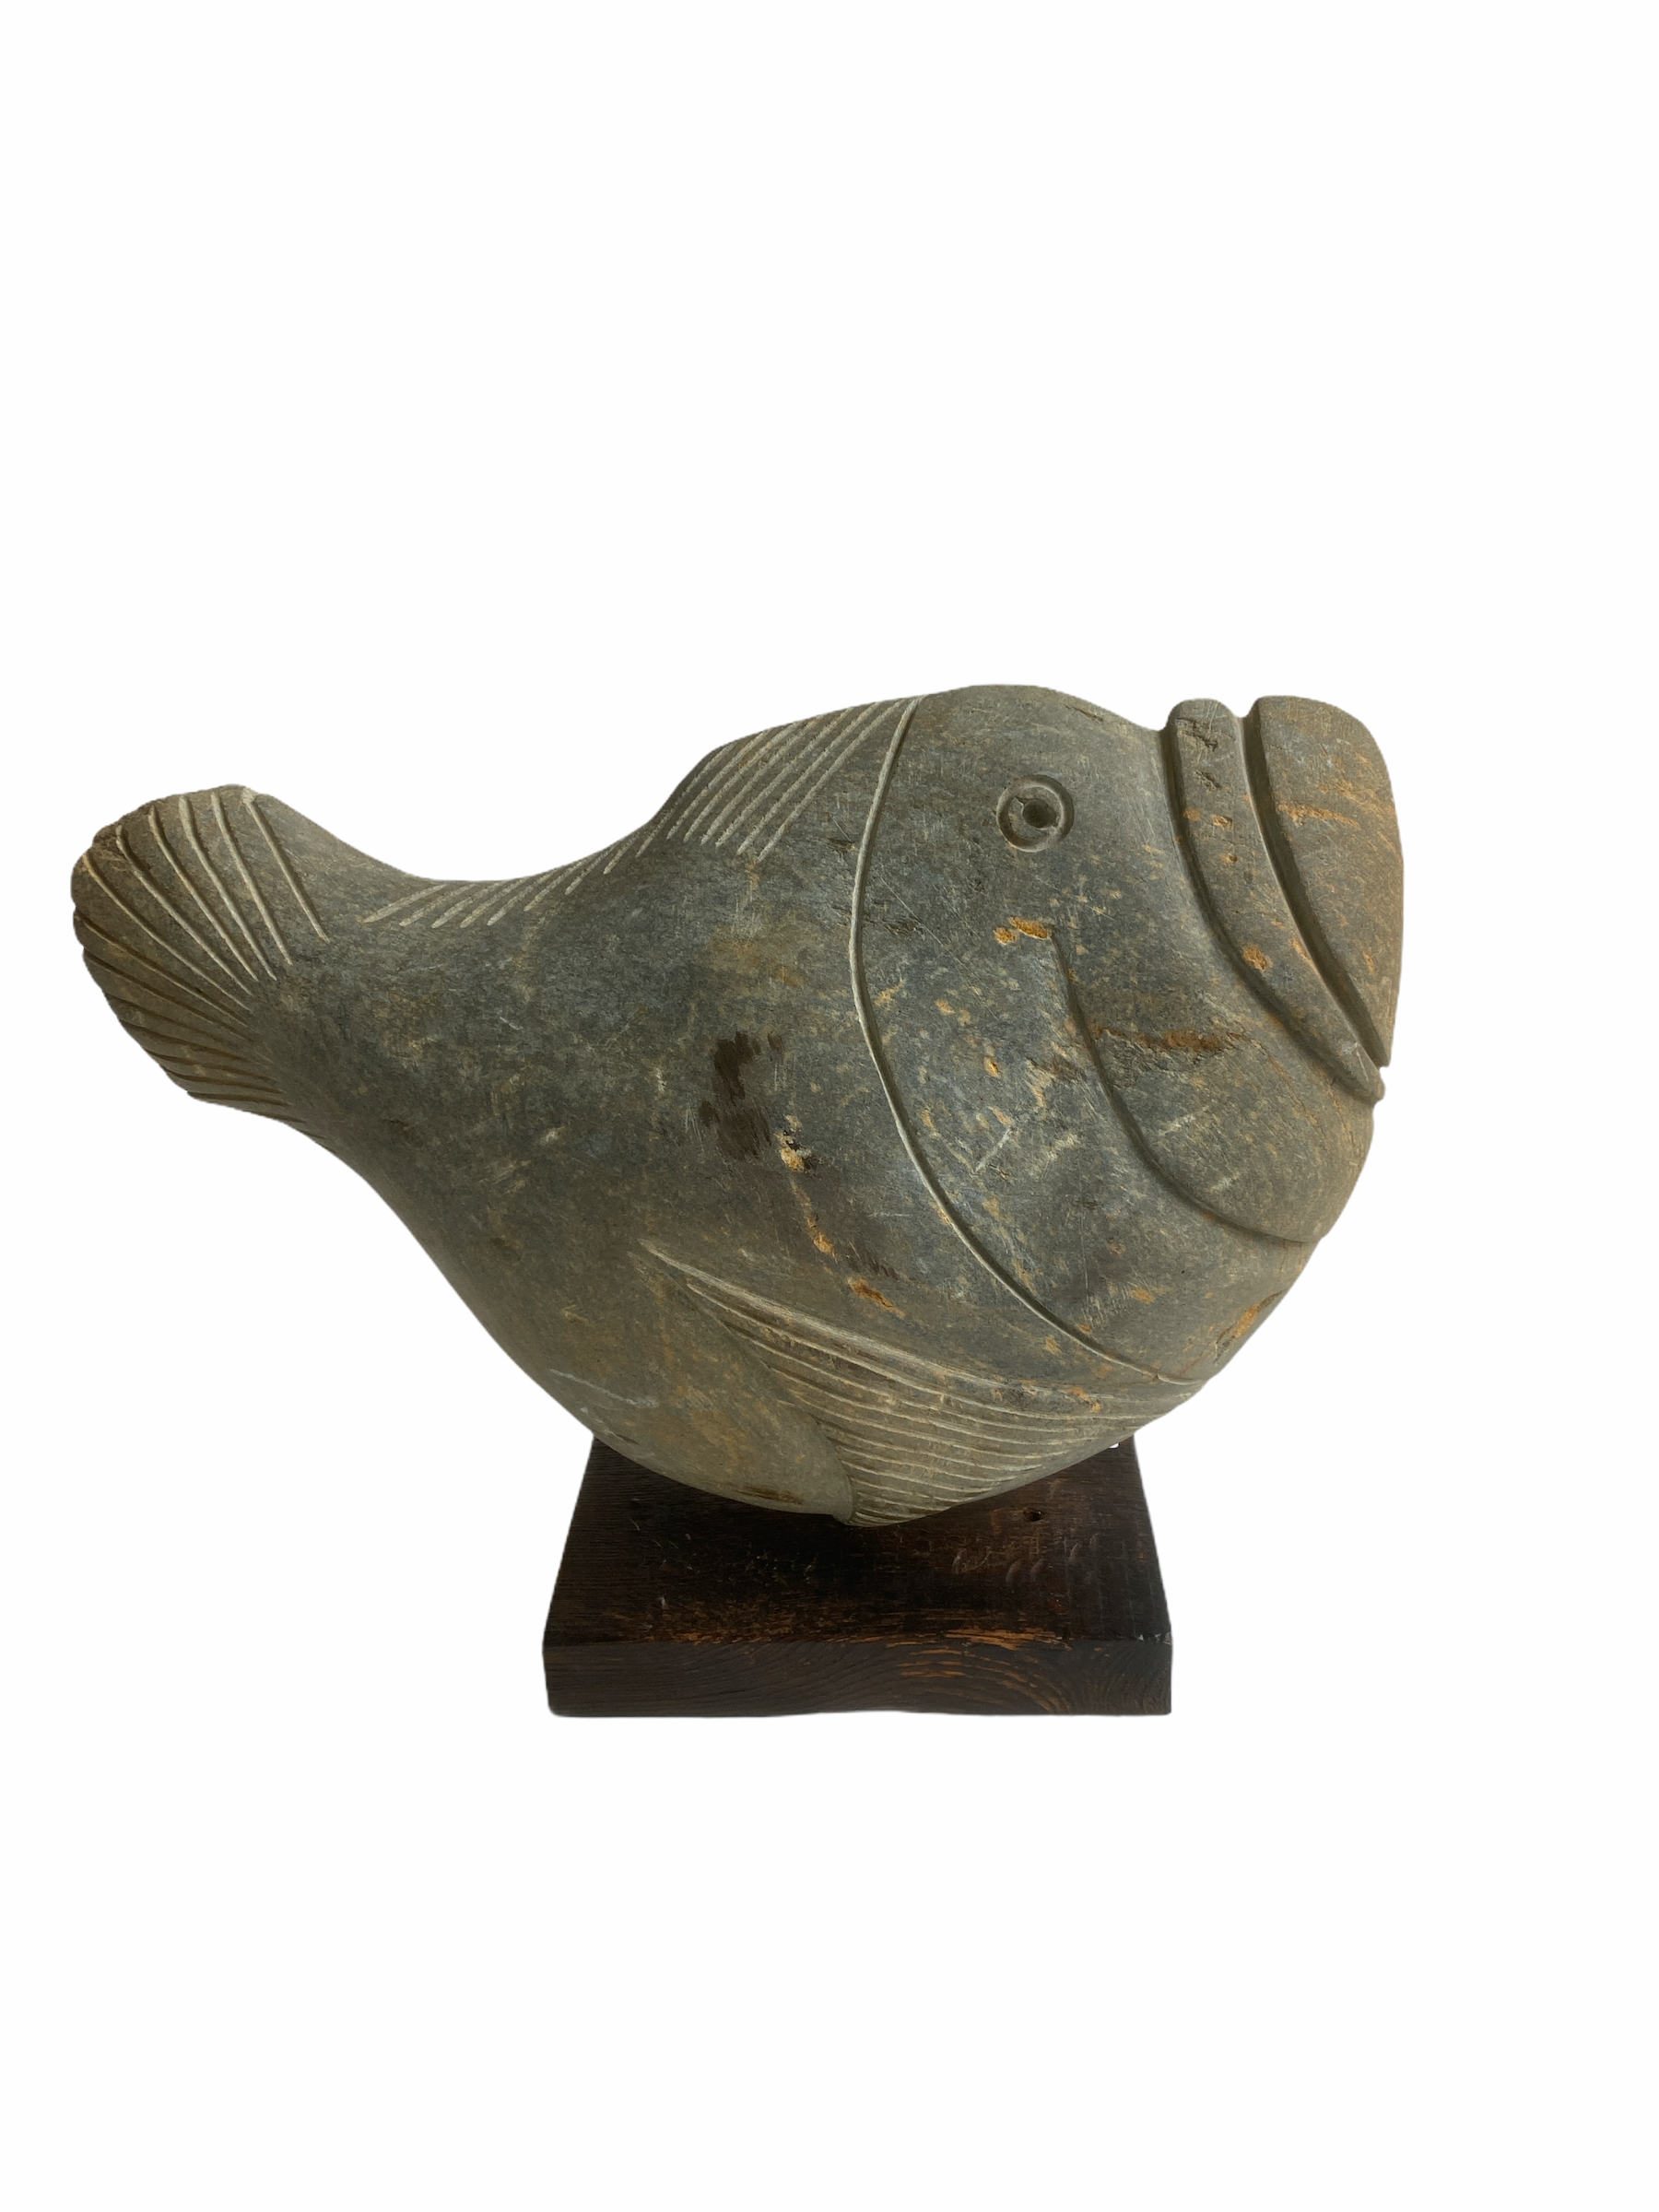 Stone Fish Sculpture - Zimbabwe (02)